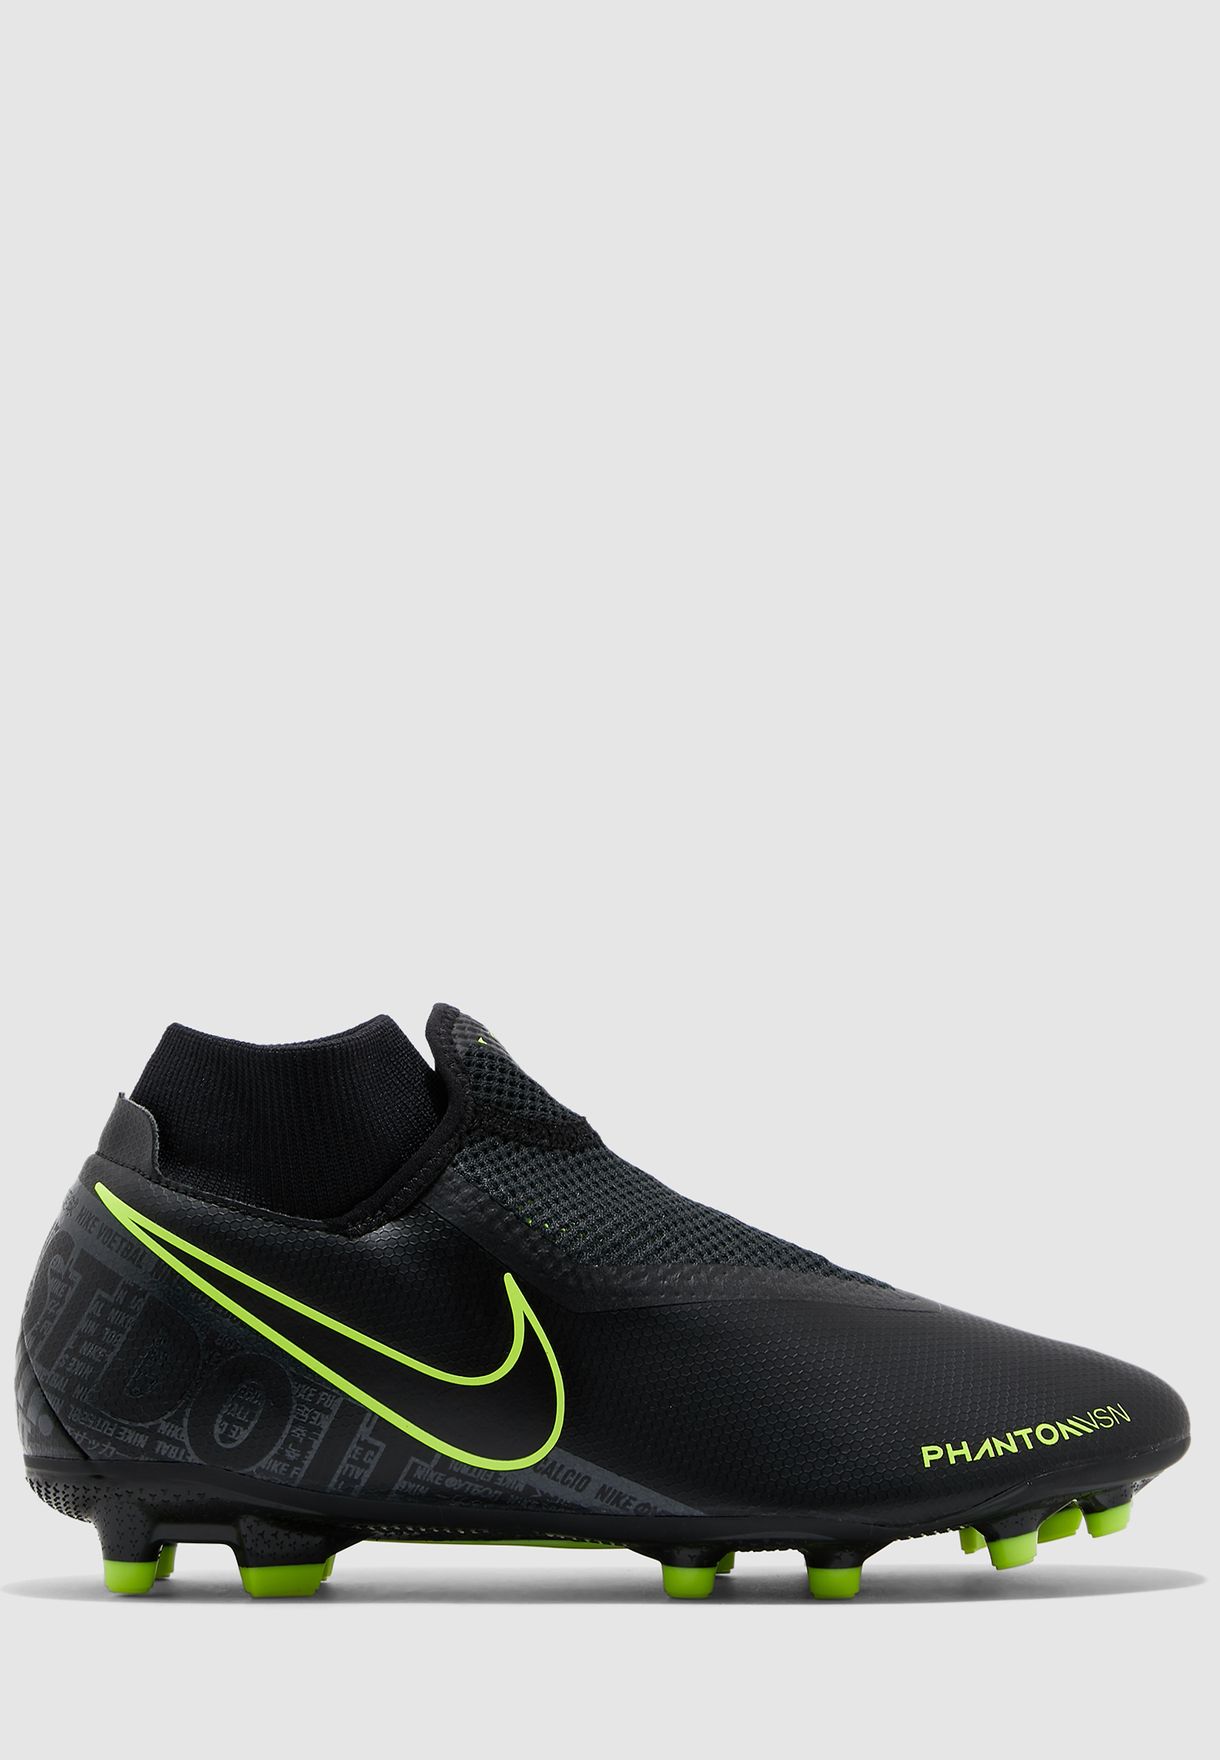 Nike PHANTOM VSN 2 CLUB DF FG MG Football Shoes For .